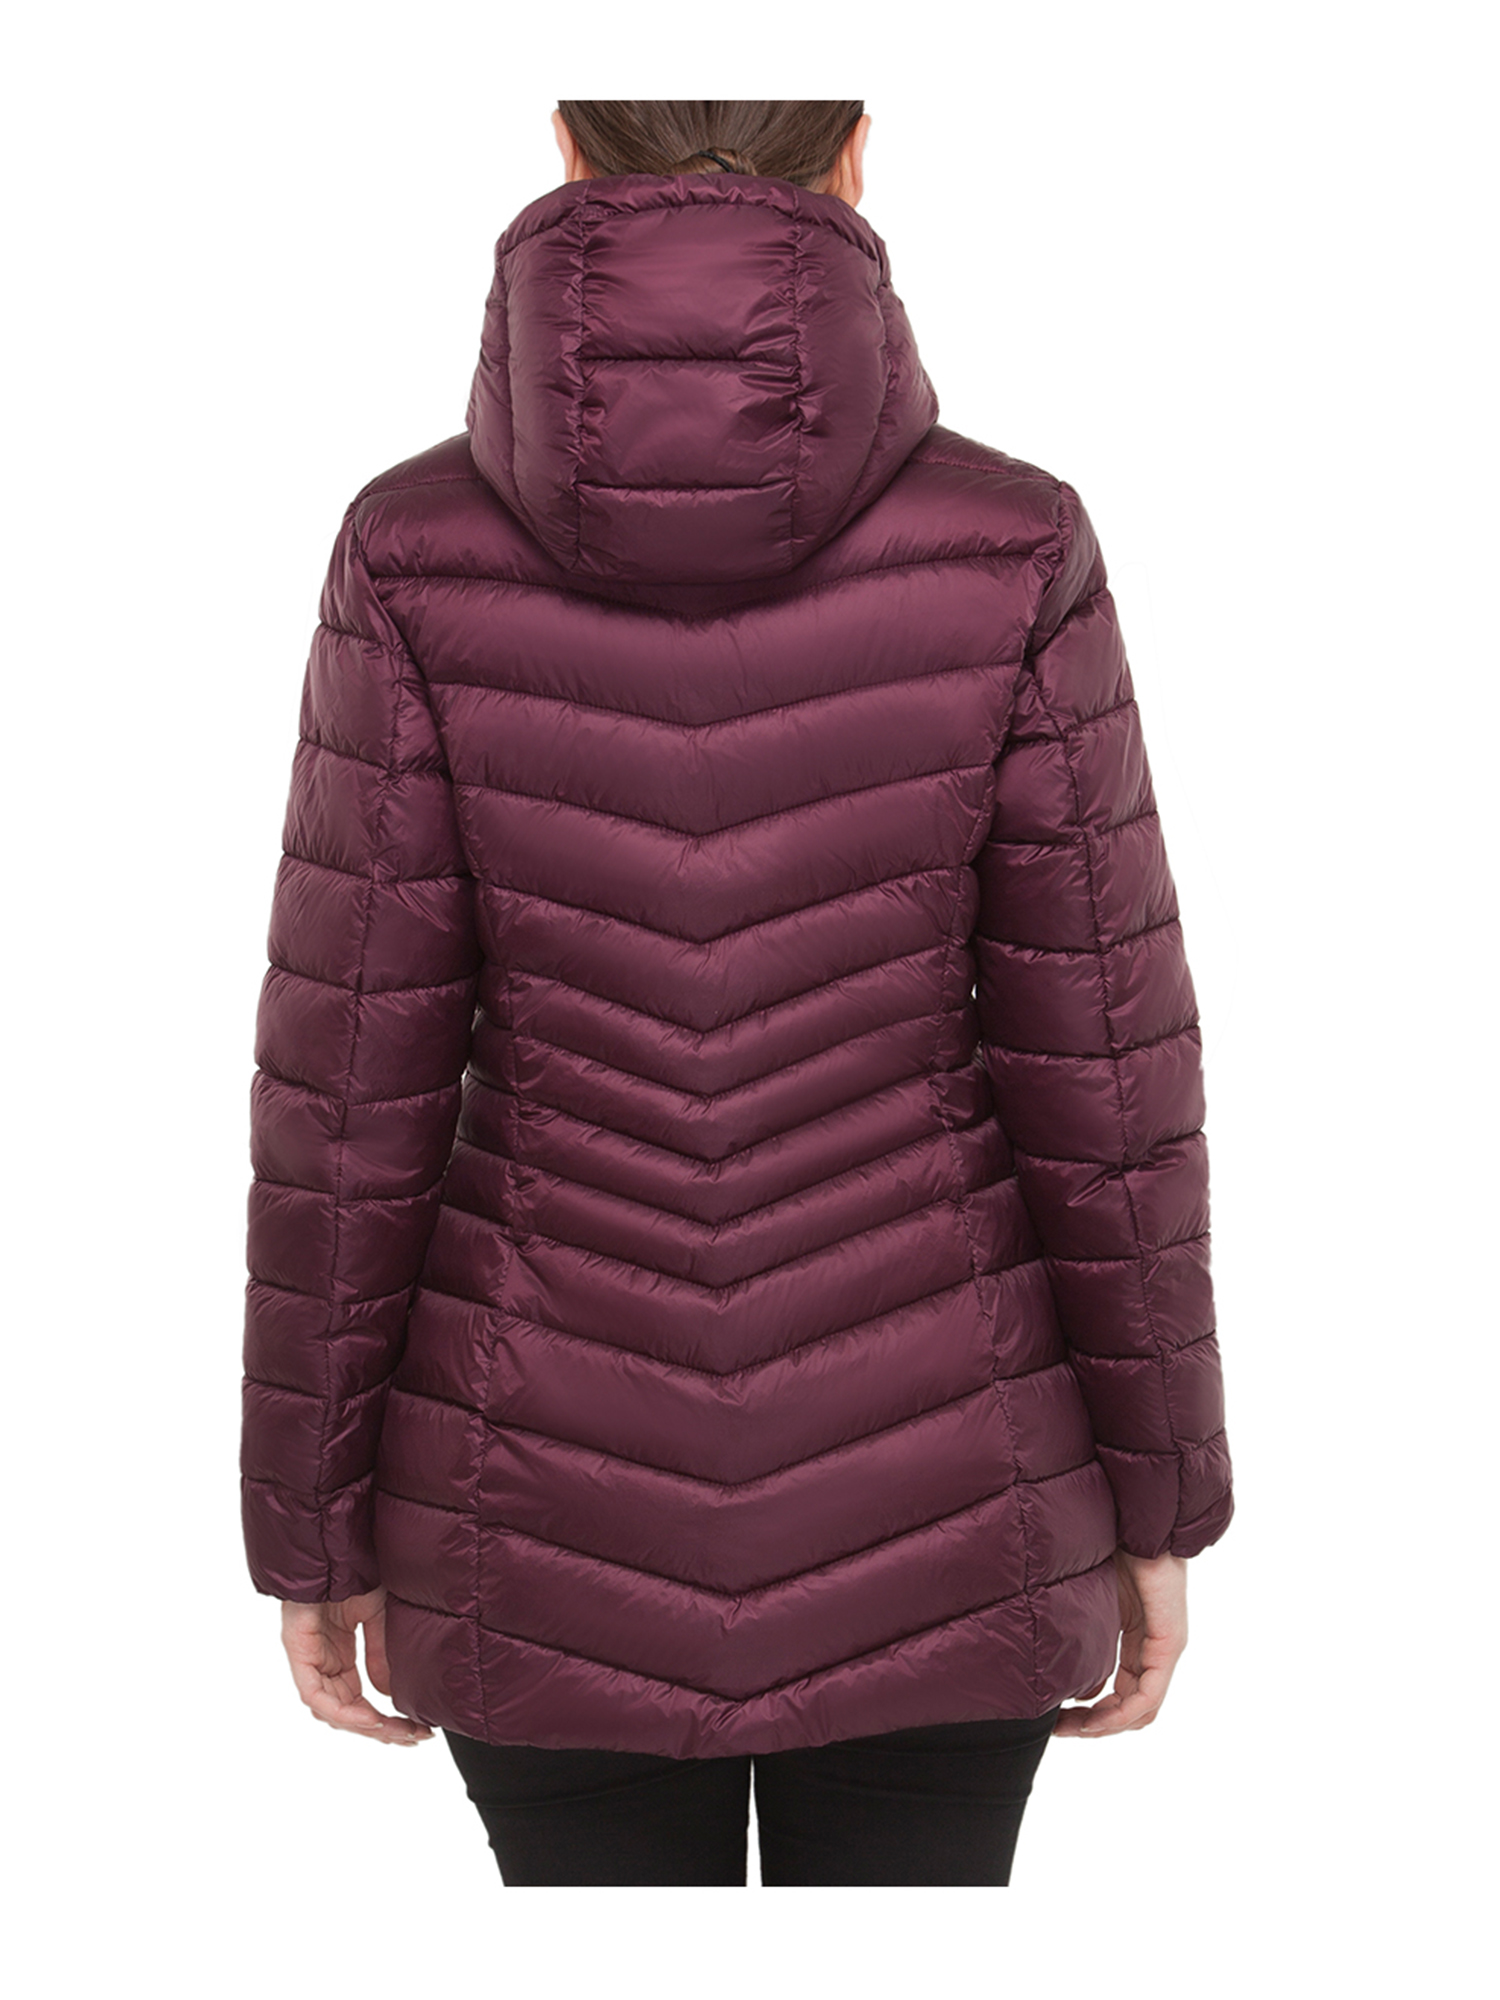 Rokka&Rolla Women's Light Long Coat Packable Puffer Jacket - Walmart.com